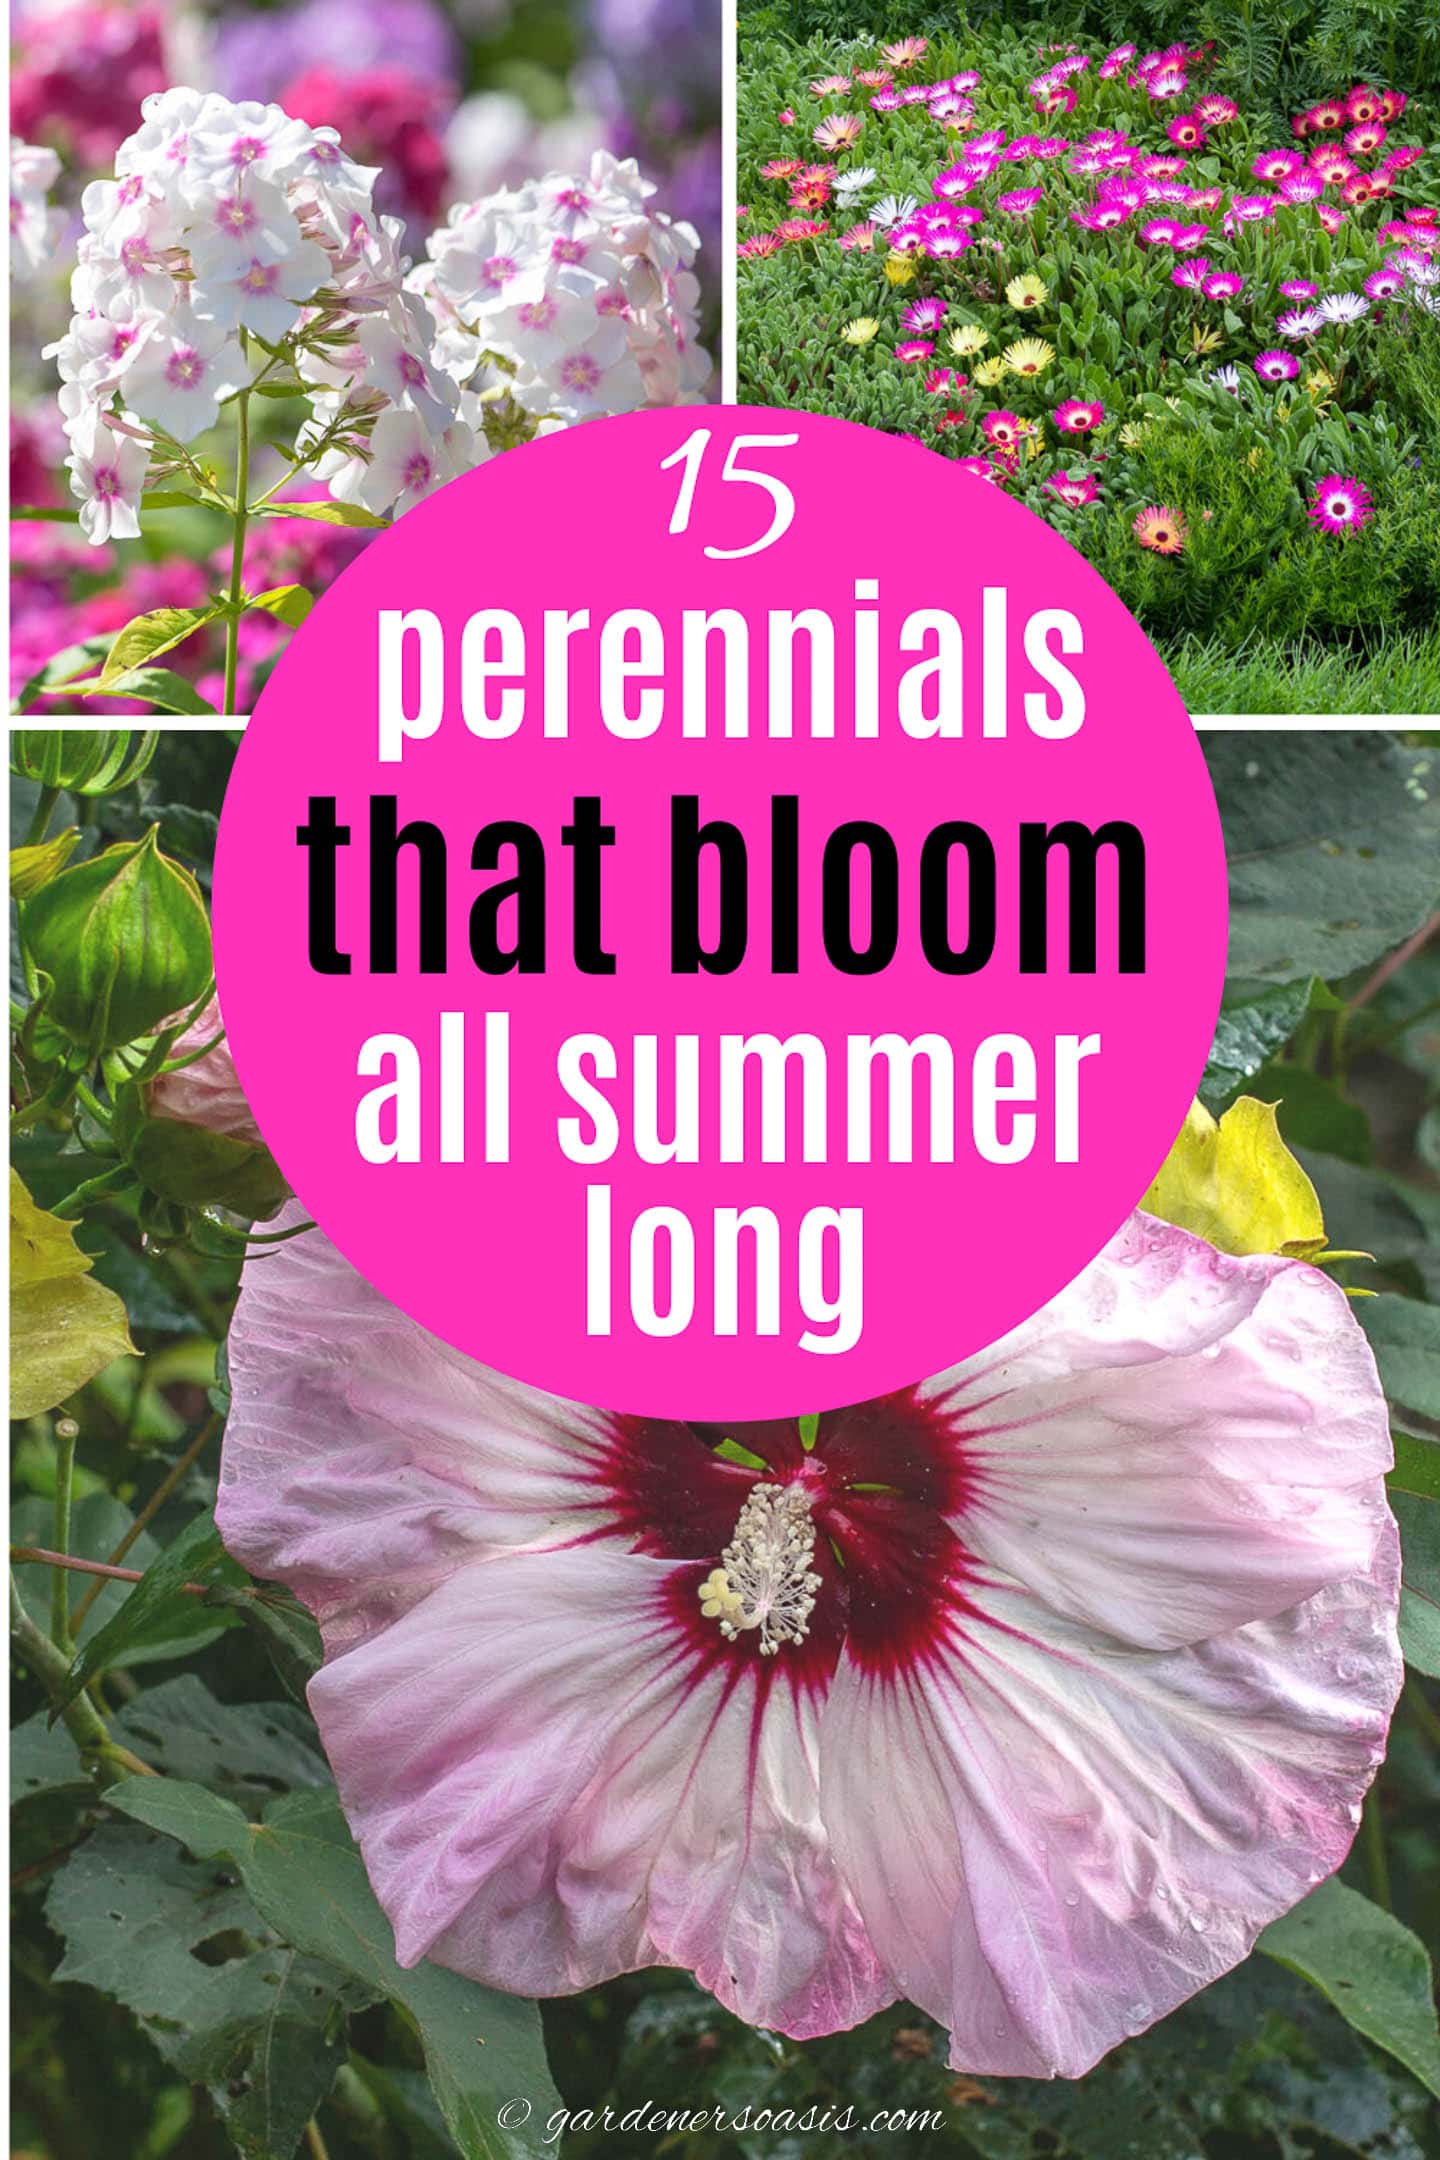 15 perennials that bloom all summer long